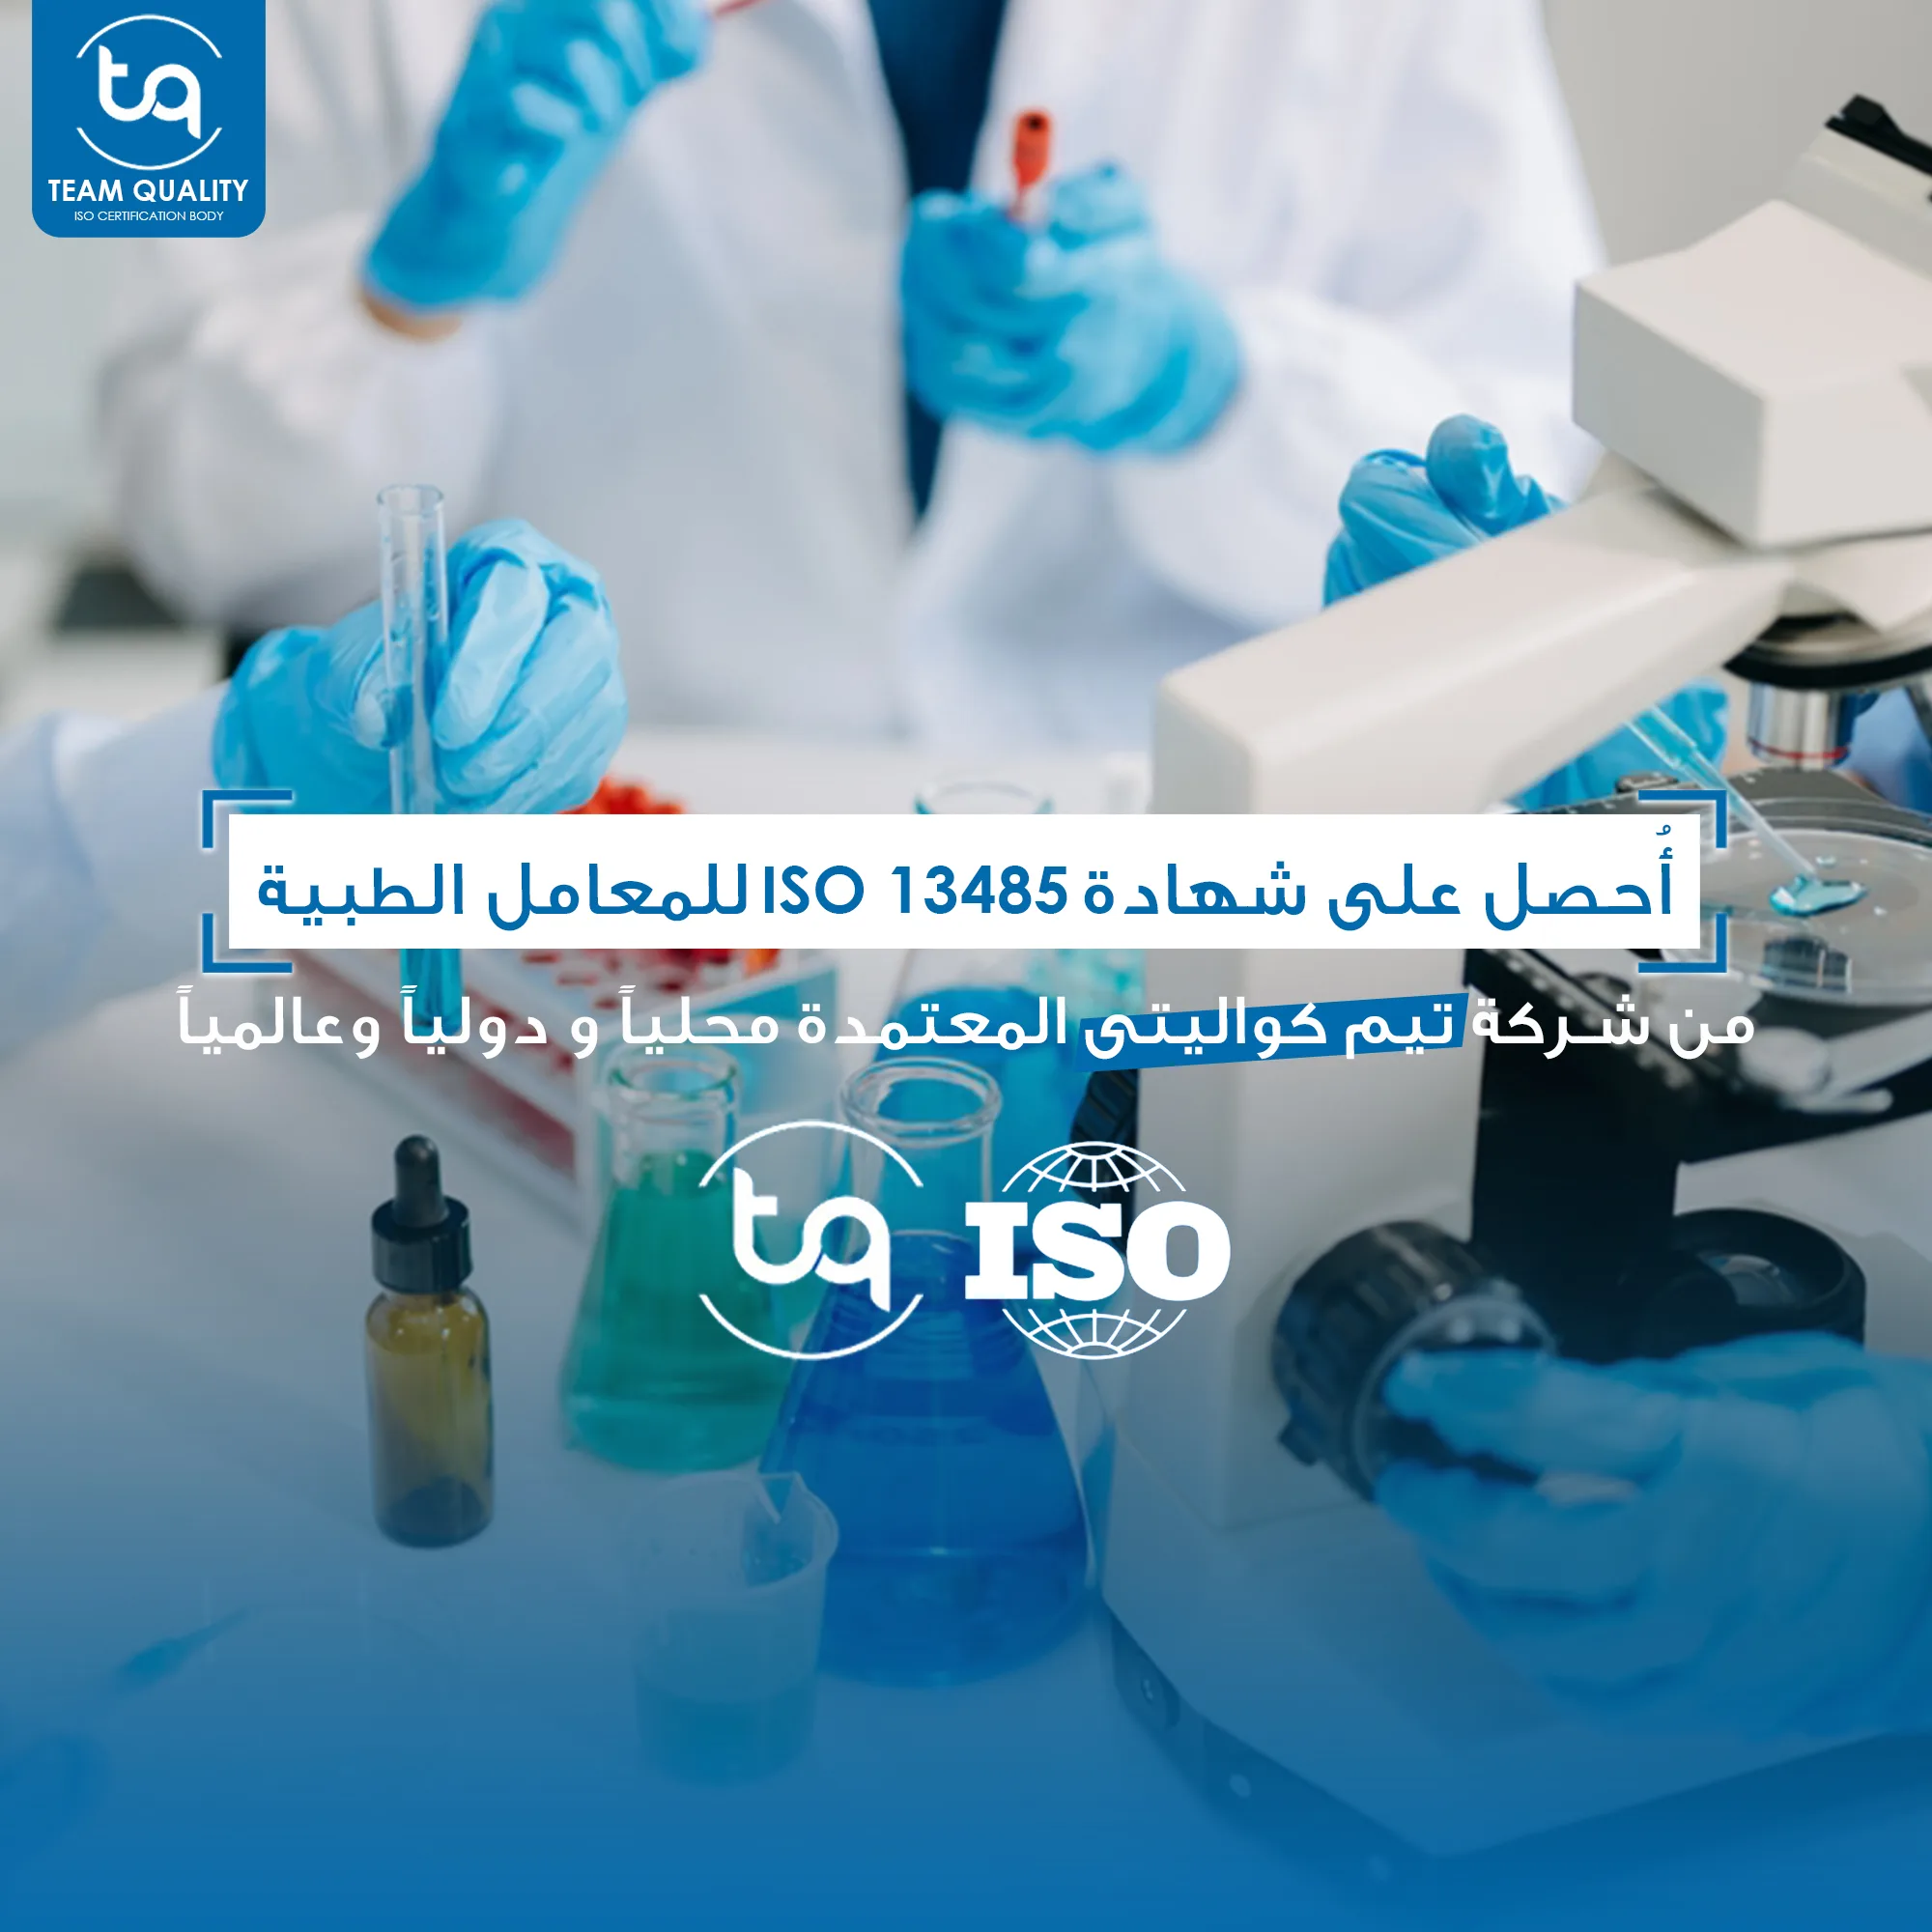 تُعزز شهادة ISO 13485 من جودة وسلامة الأجهزة الطبية، مما يُكسب الشركات ثقة المرضى والمختصين، ويضمن أداءً عاليًا للمنتجات، ويحسن العمليات الداخلية، ويمنح الشركات ميزة تنافسية في الأسواق المحلية والعالمية.